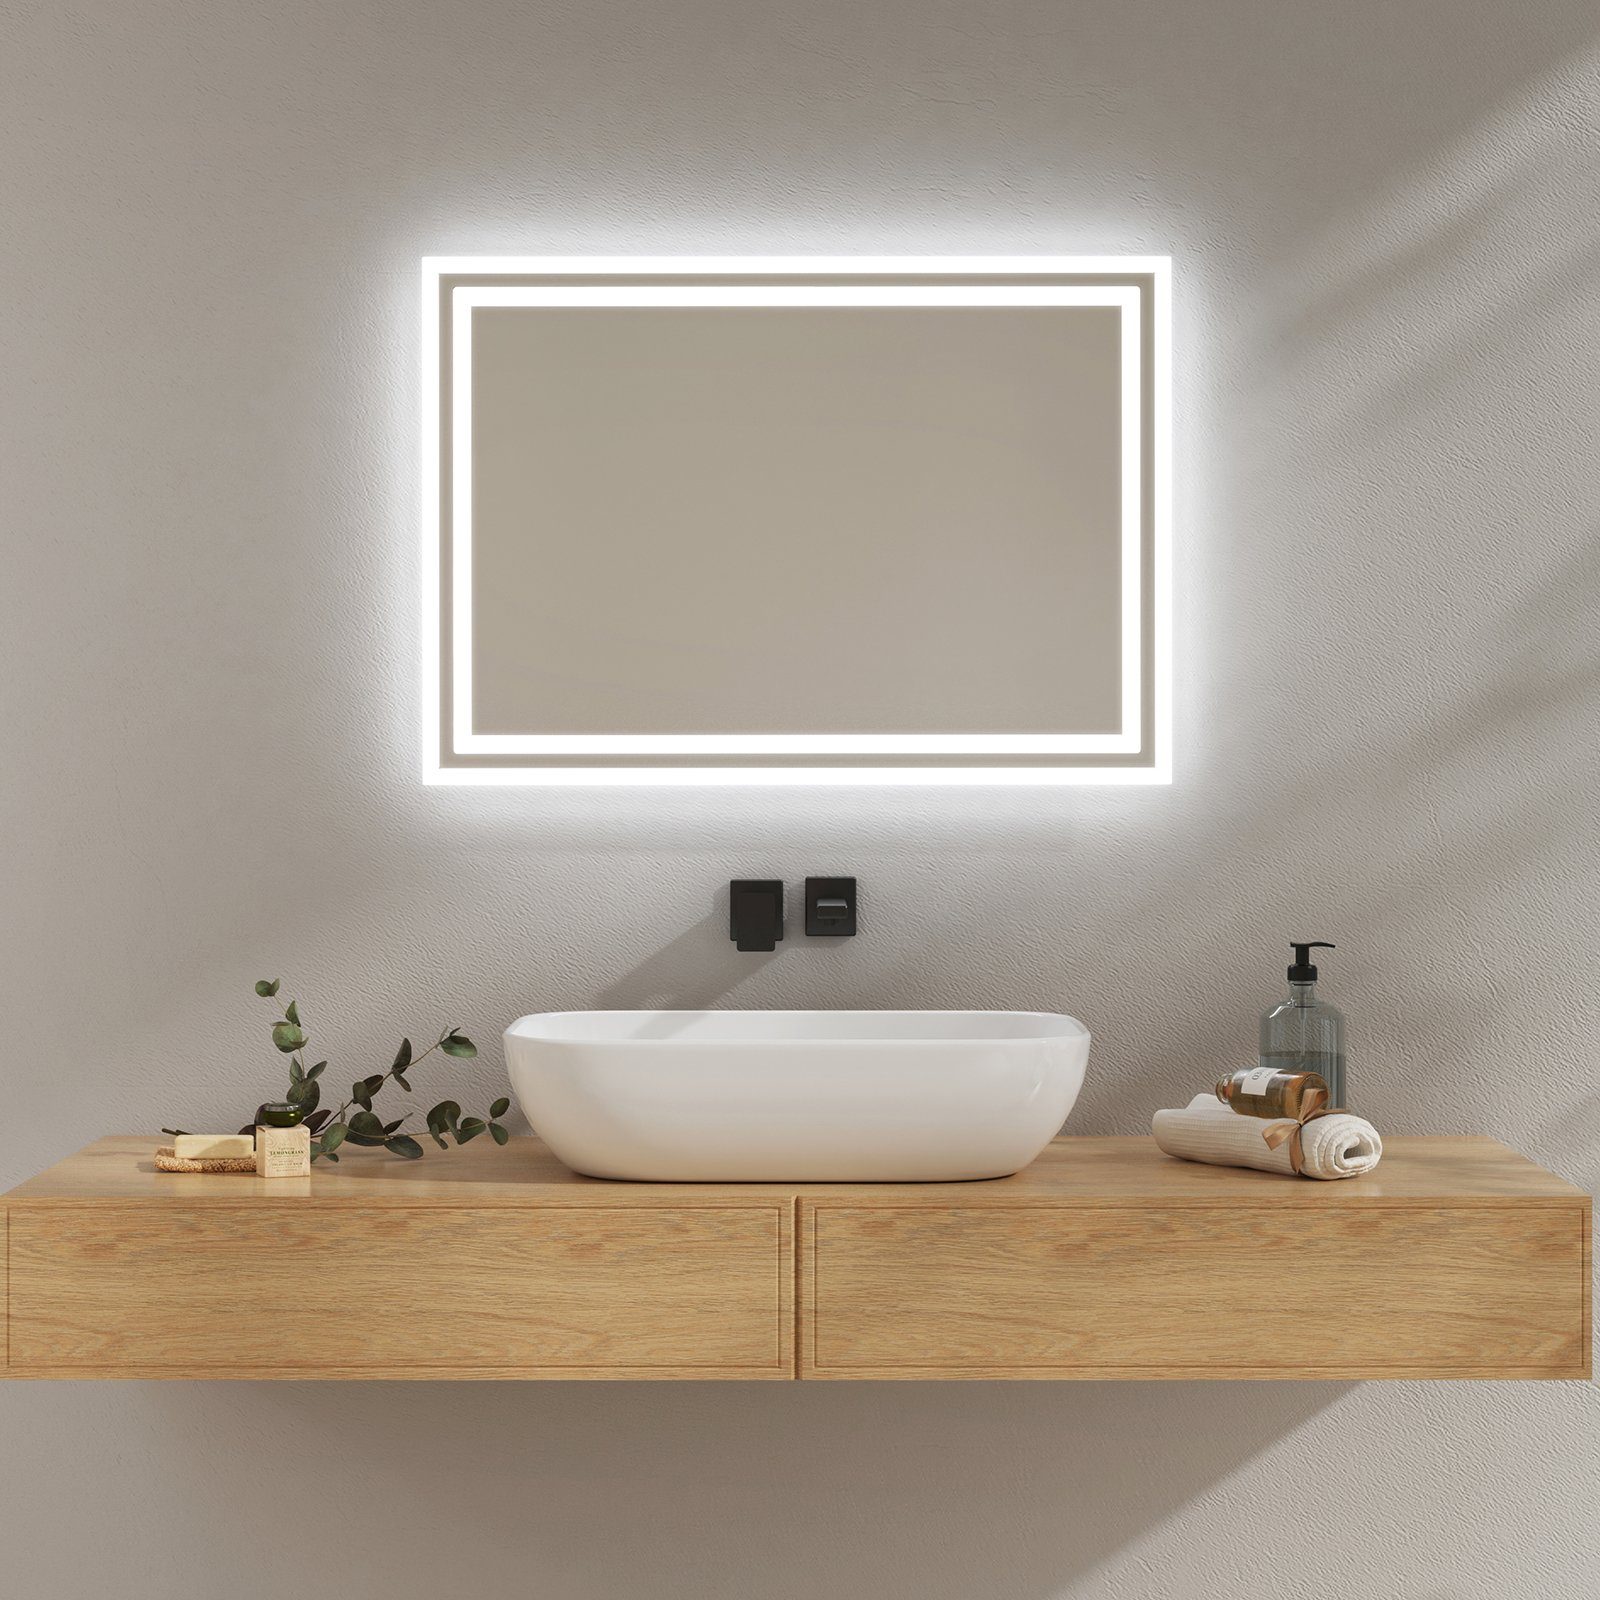 EMKE Badspiegel mit Beleuchtung LED Badezimmerspiegel Wandspiegel (Modell 4, Vertikal Horizontal möglich, Druckknopfschalter), Beschlagfrei, 2 Lichtfarben IP44